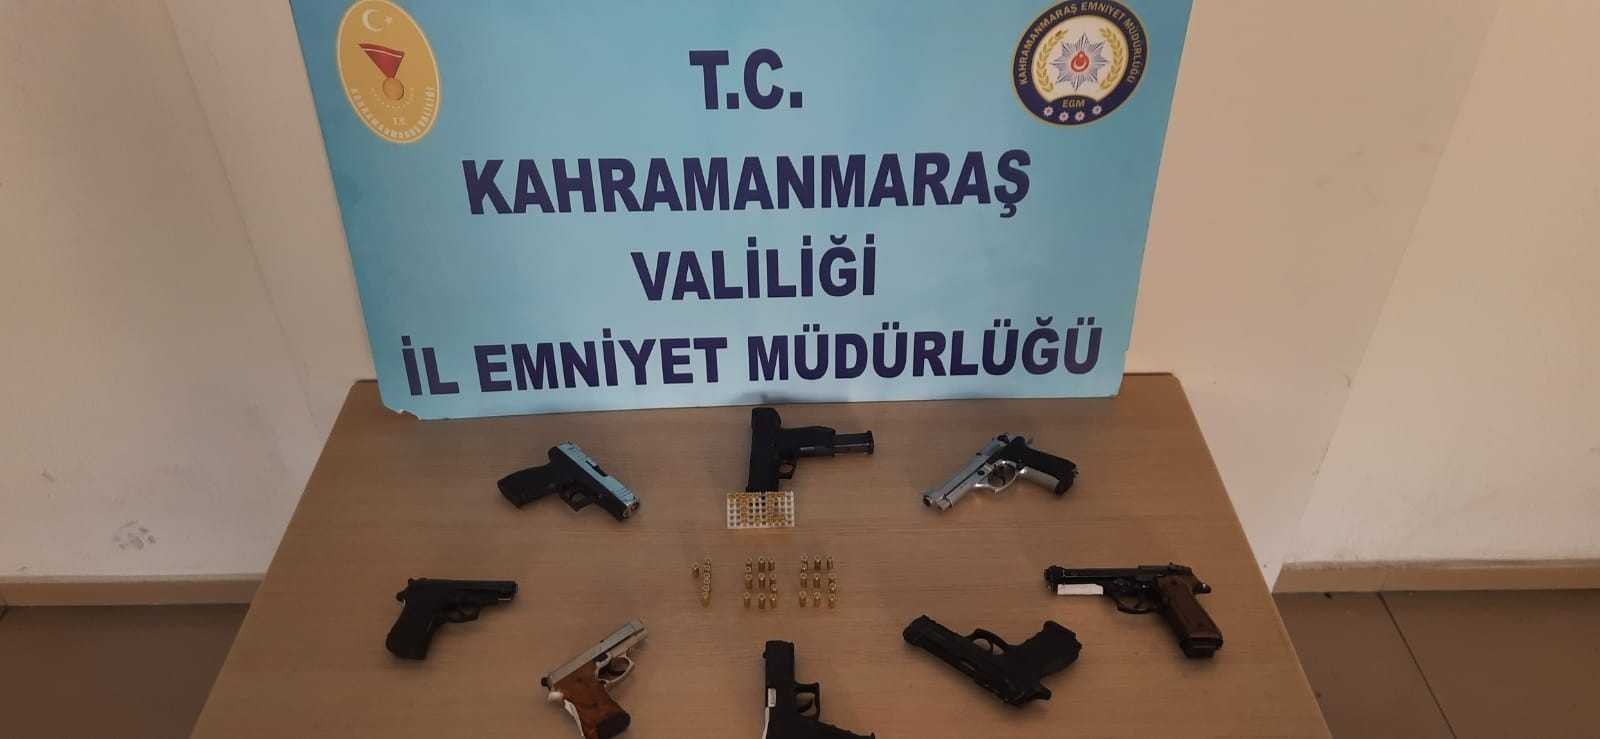 Kahramanmaraş’ta 14 adet silah ele geçirdi #kahramanmaras